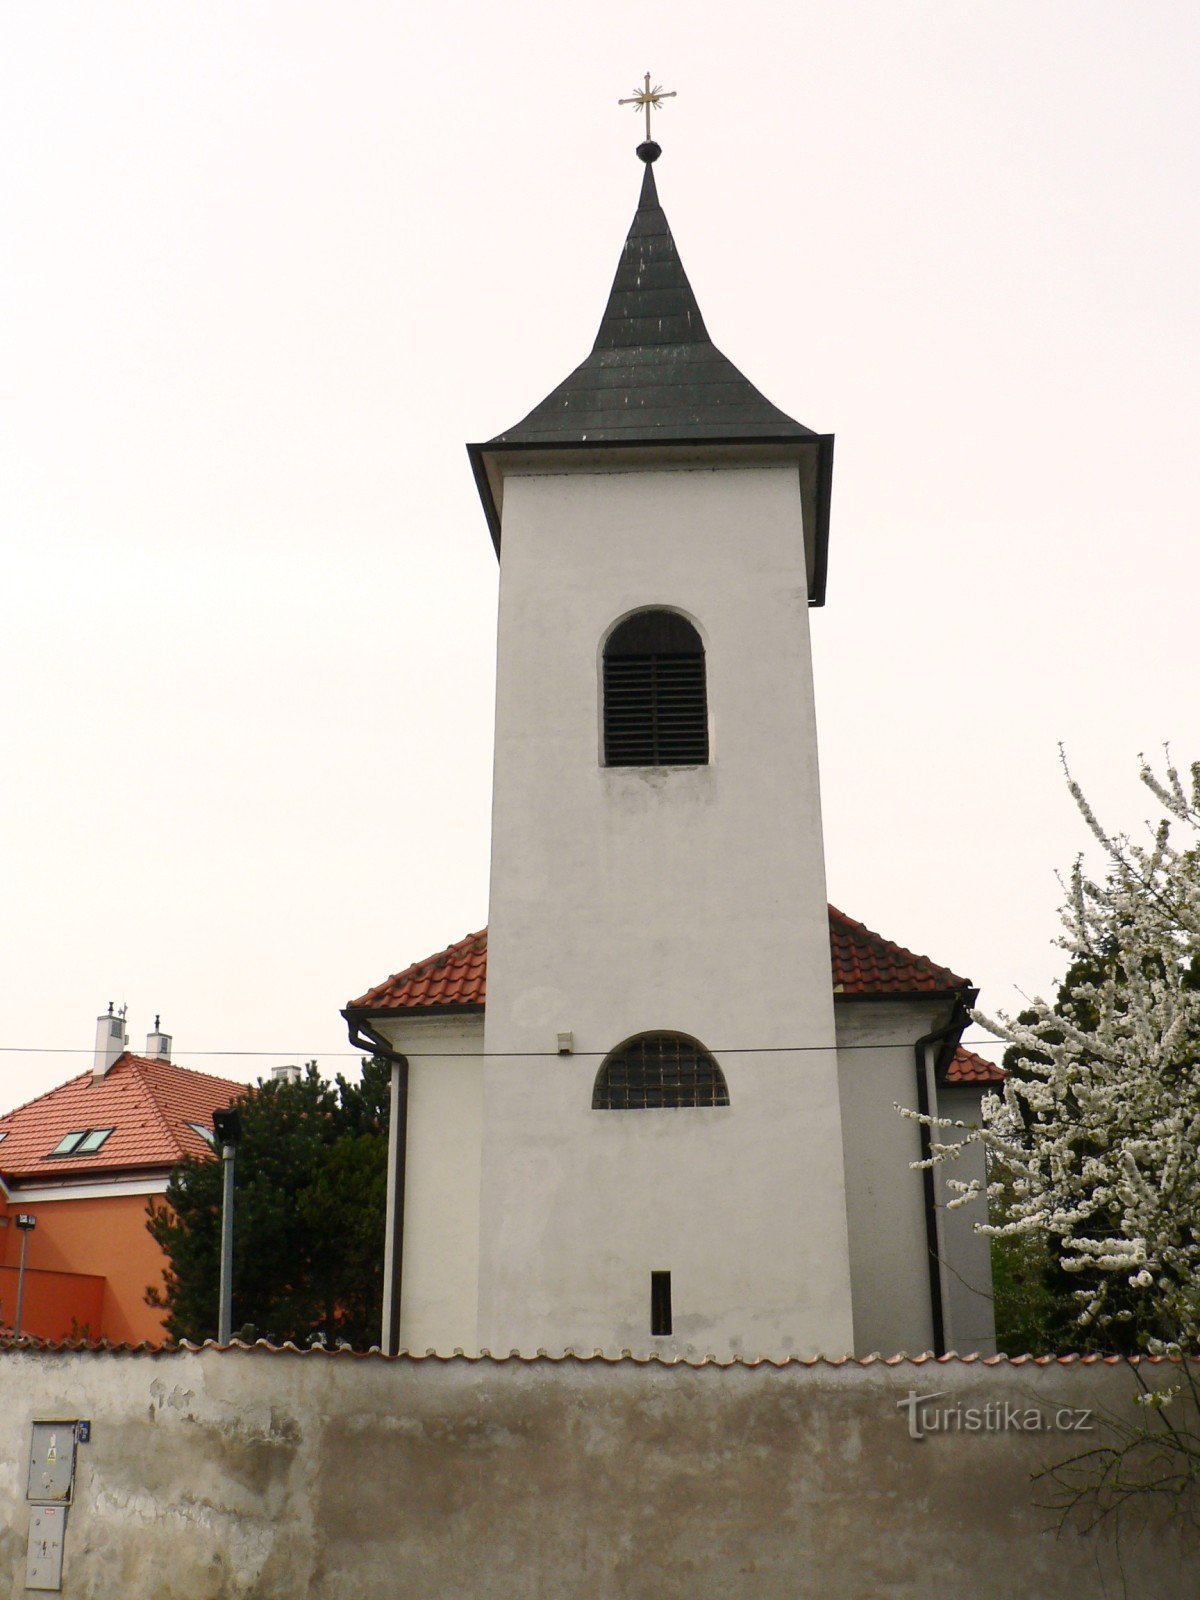 Hrnčíře (Prag) - Kyrkan St. Procopius